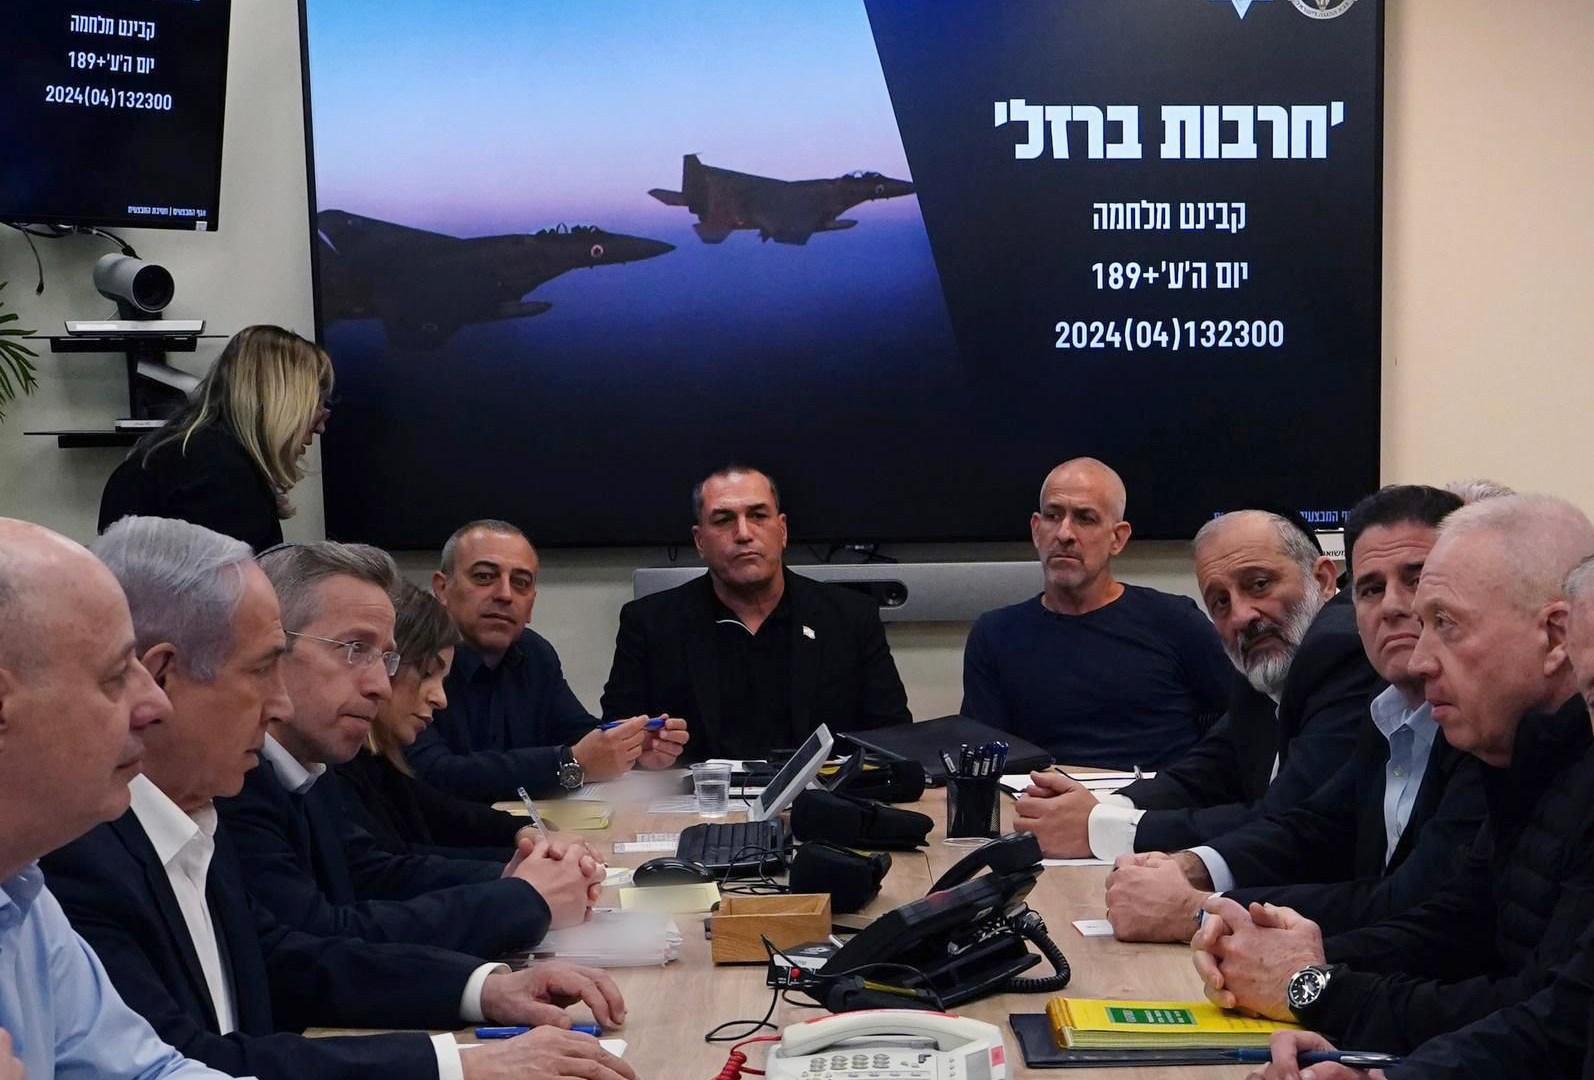 وزراء في مجلس الحرب الإسرائيلي يدعمون اقتراحا جديدا لصفقة التبادل | أخبار – البوكس نيوز